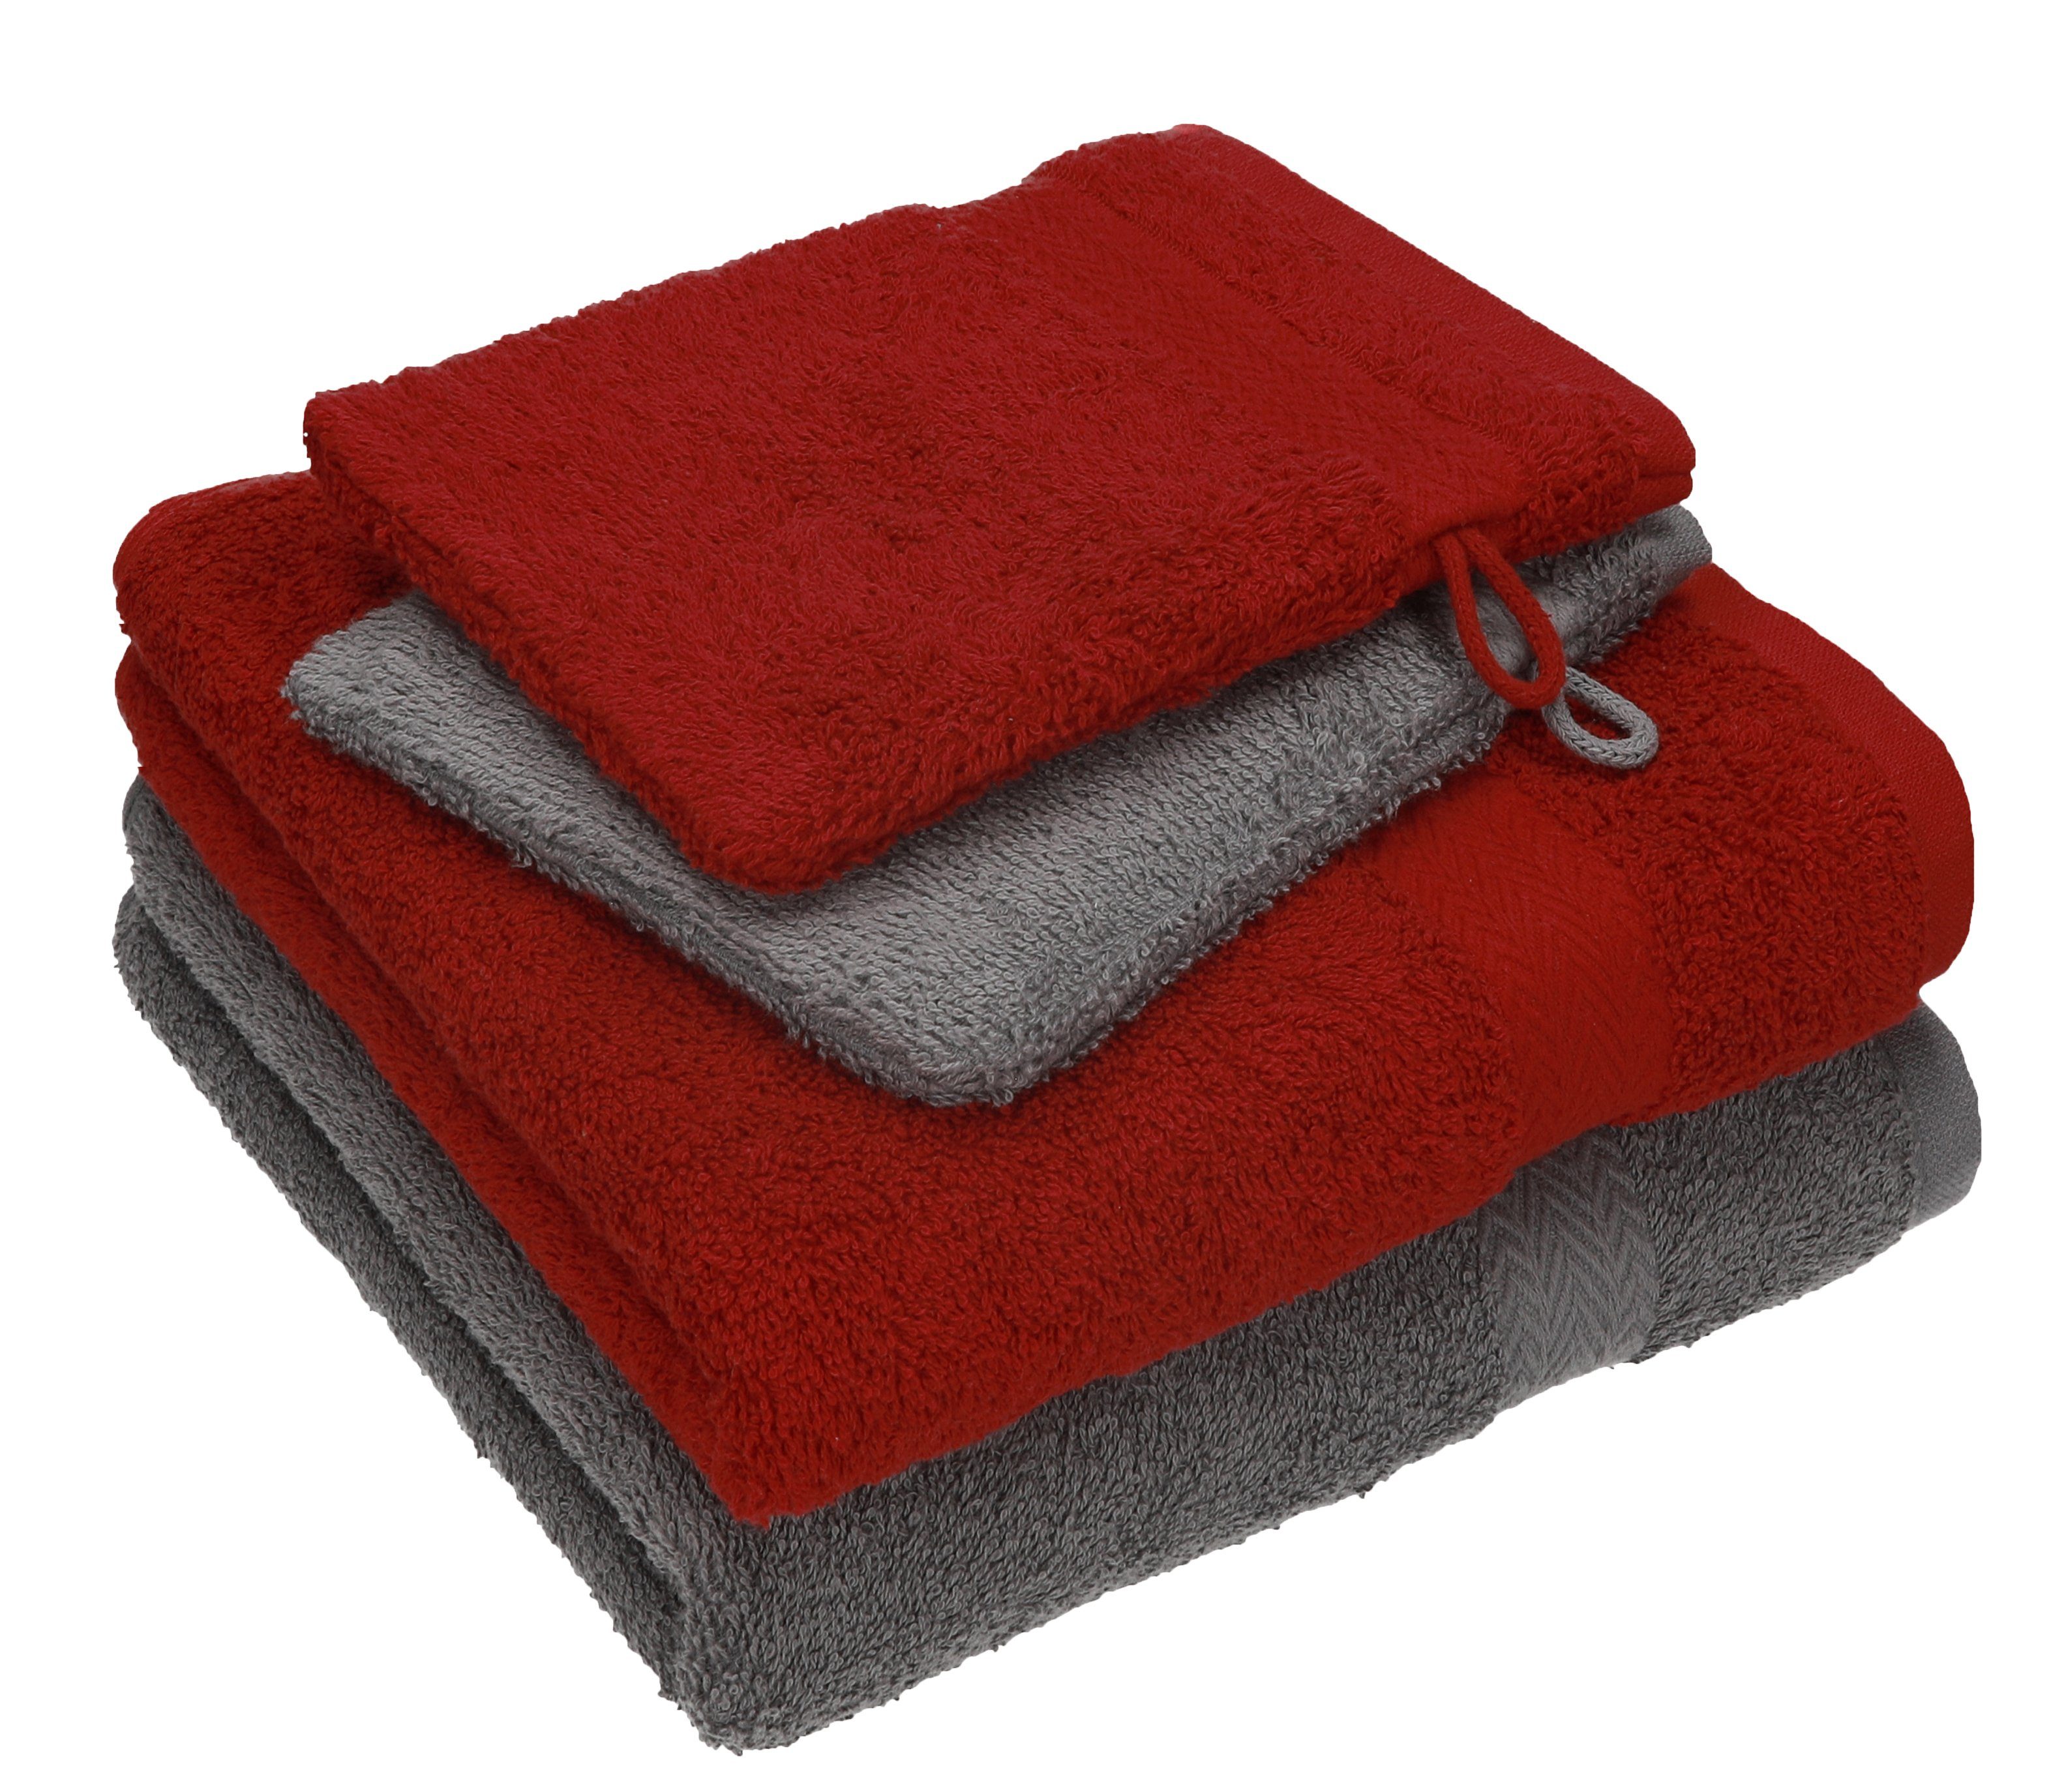 Handtücher - dunkelrot Baumwolle 2 2 TLG. 100% Pack Set Waschhandschuhe, 4 grau Baumwolle Betz Set Handtuch Handtuch Happy 100% anthrazit